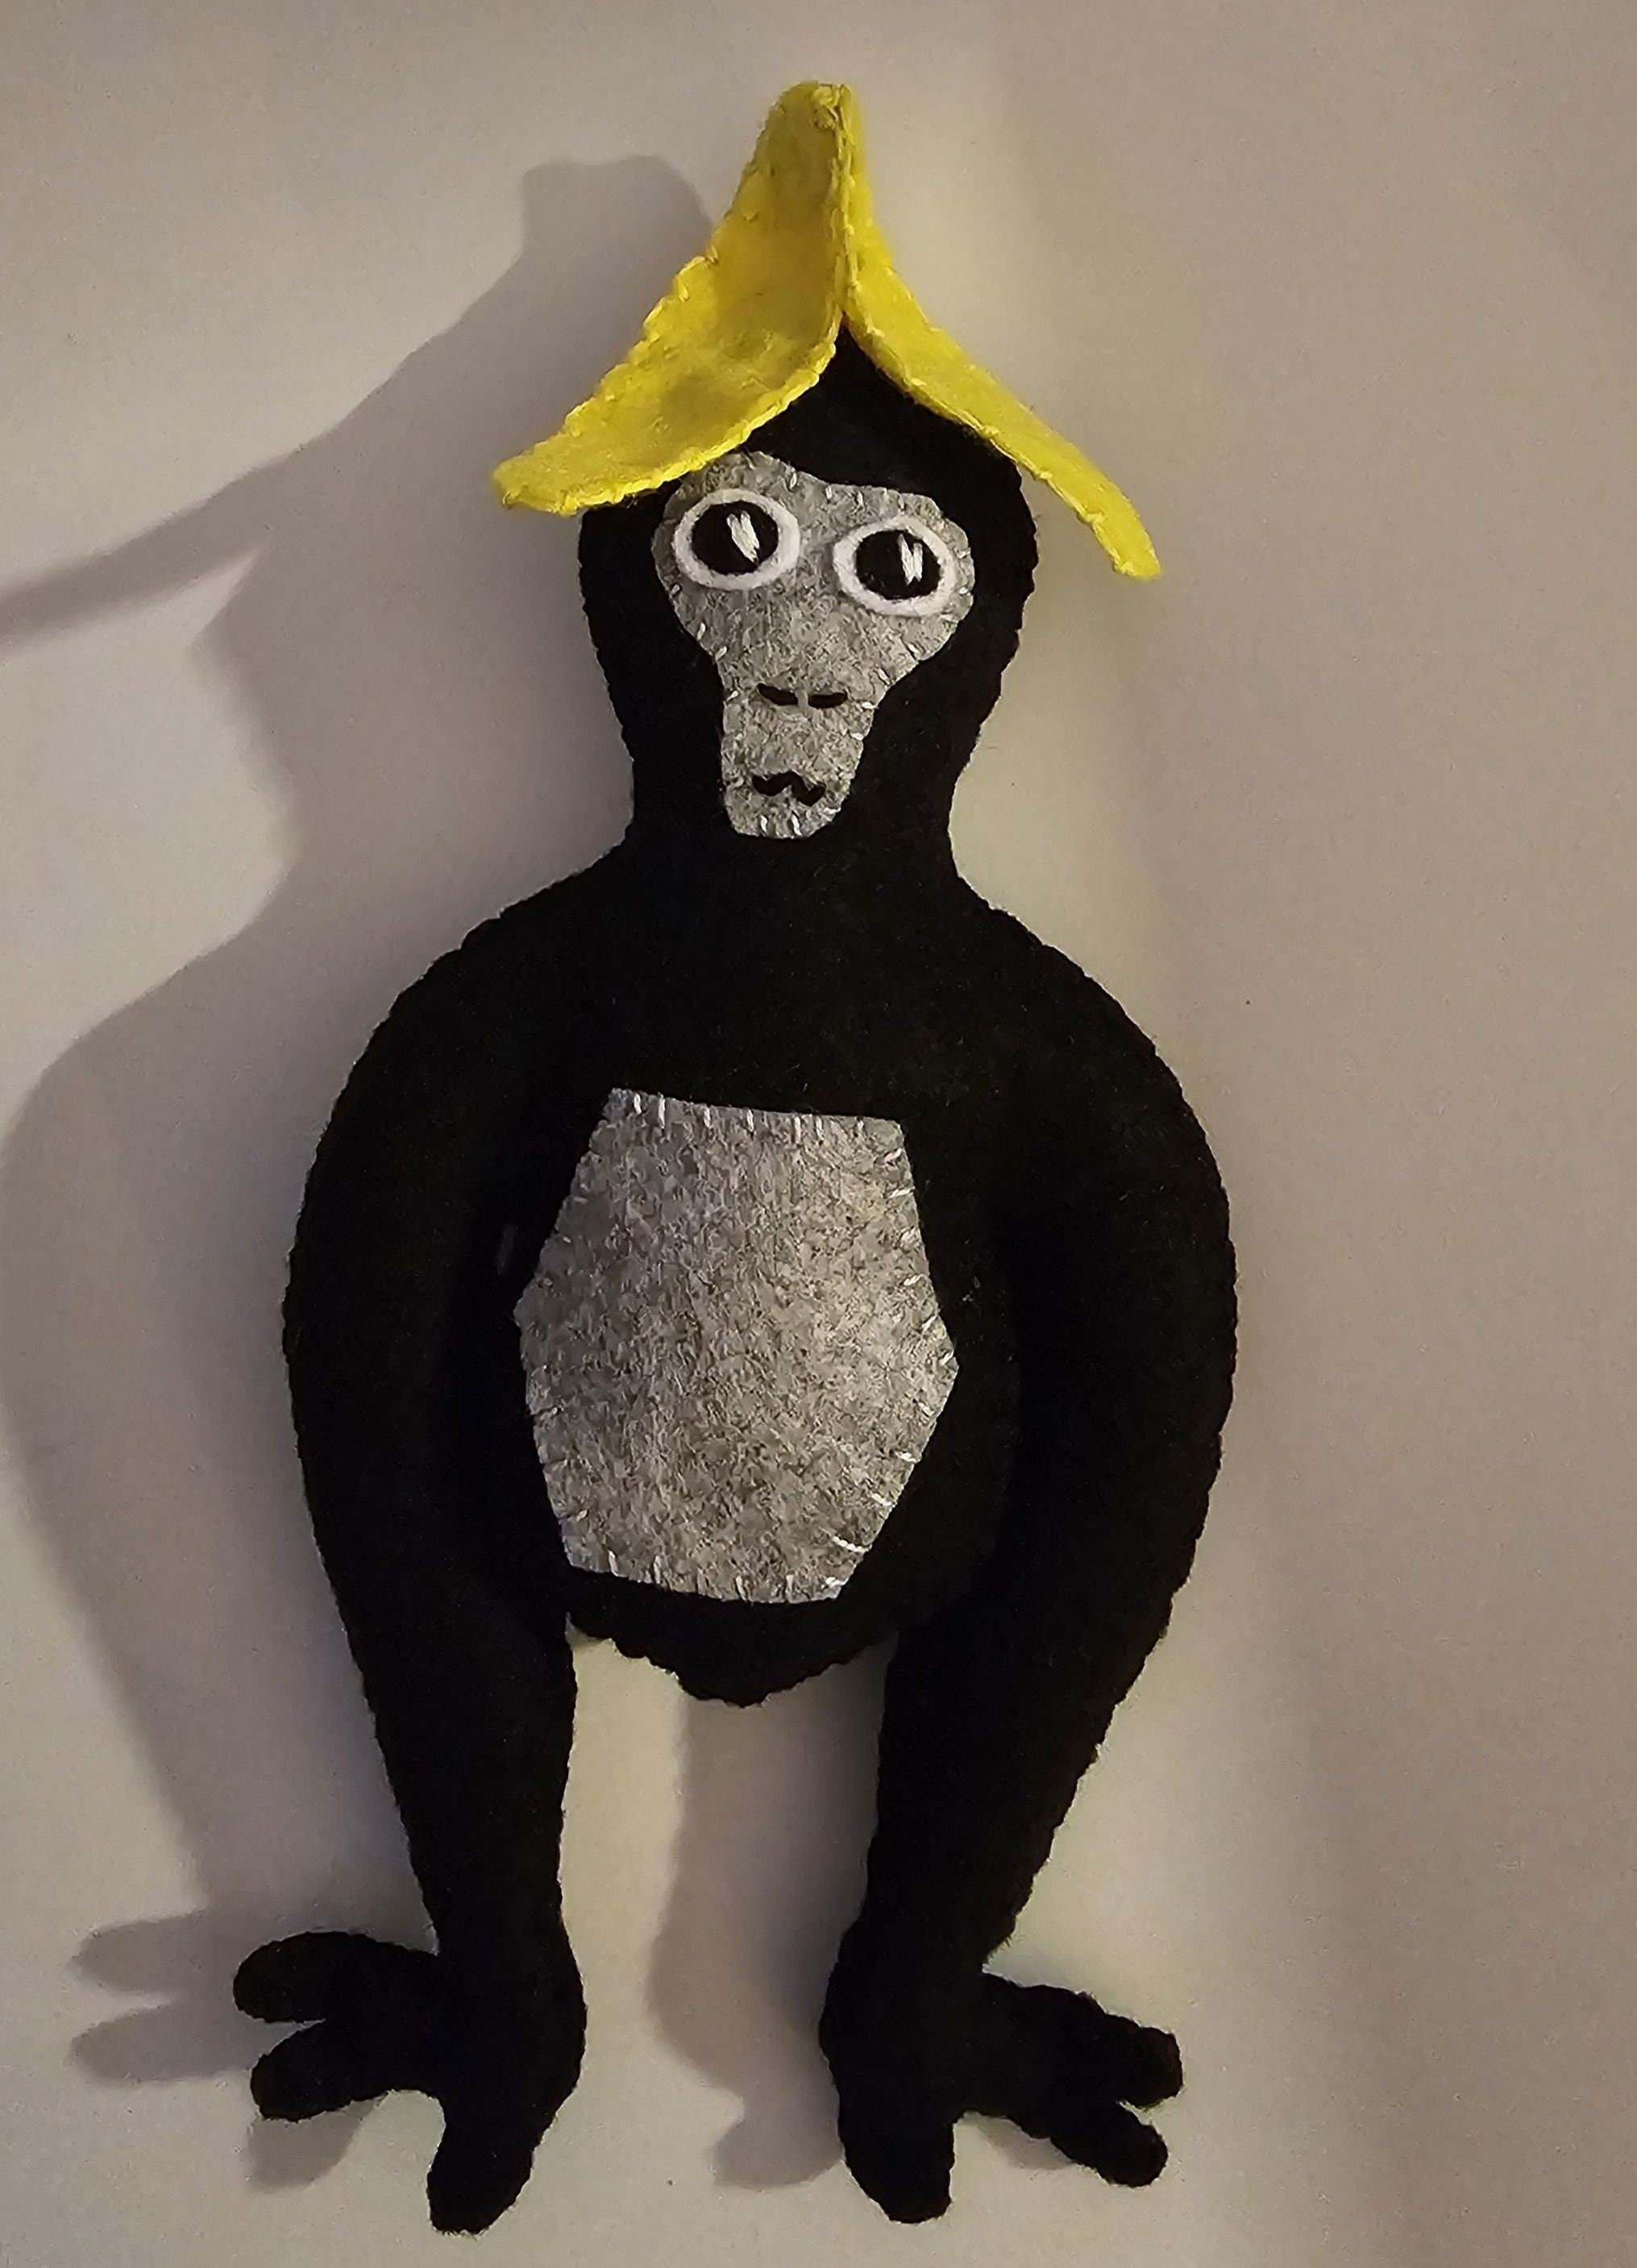  CUIGSRO Gorilla Tag Plush, 9.8 Gorilla tag Toy